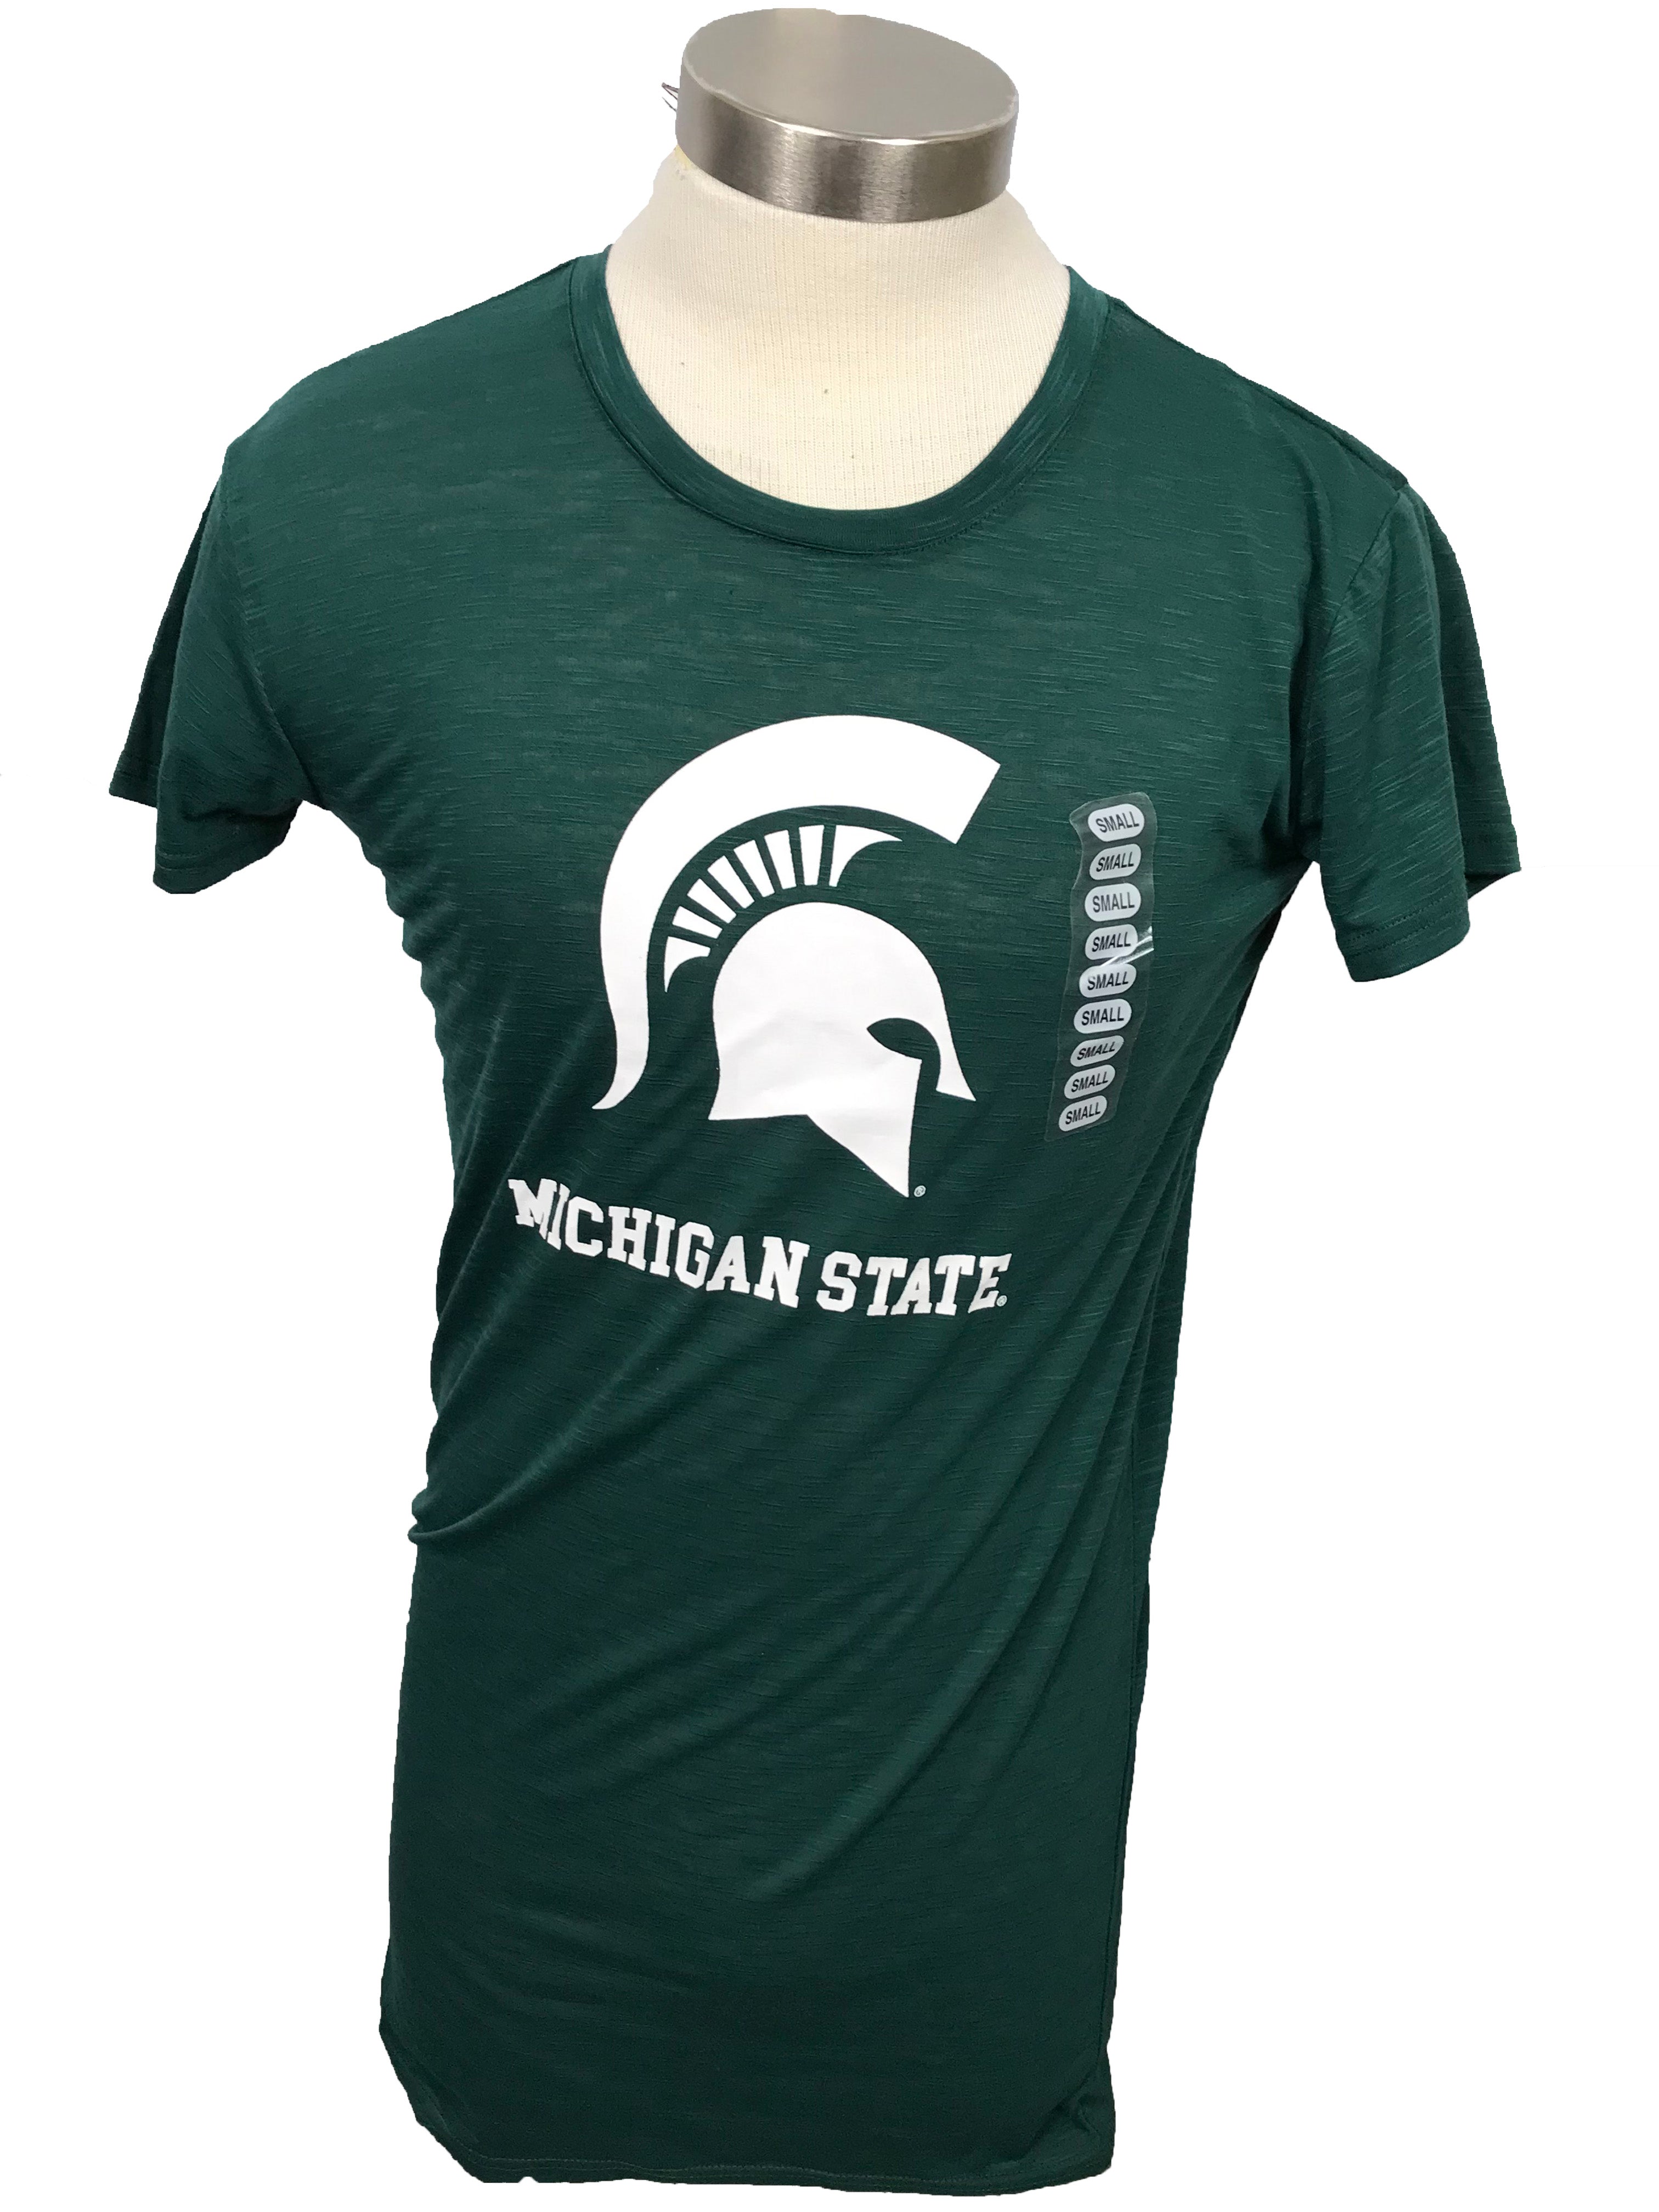 Michigan State University Green T-Shirt Unisex Size Small